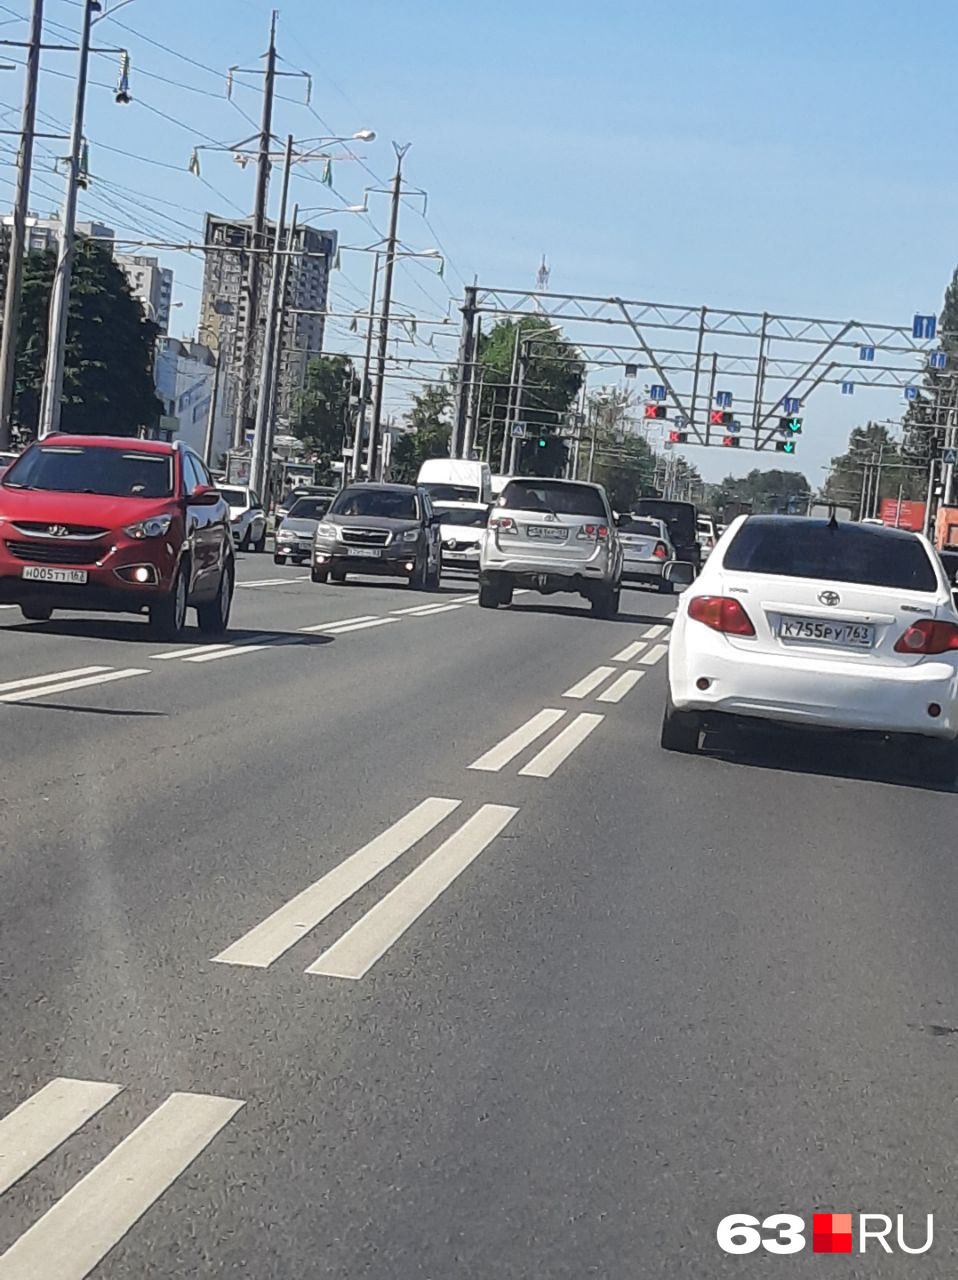 Автомобилисты говорят, что некоторые водители игнорируют красный сигнал светофора